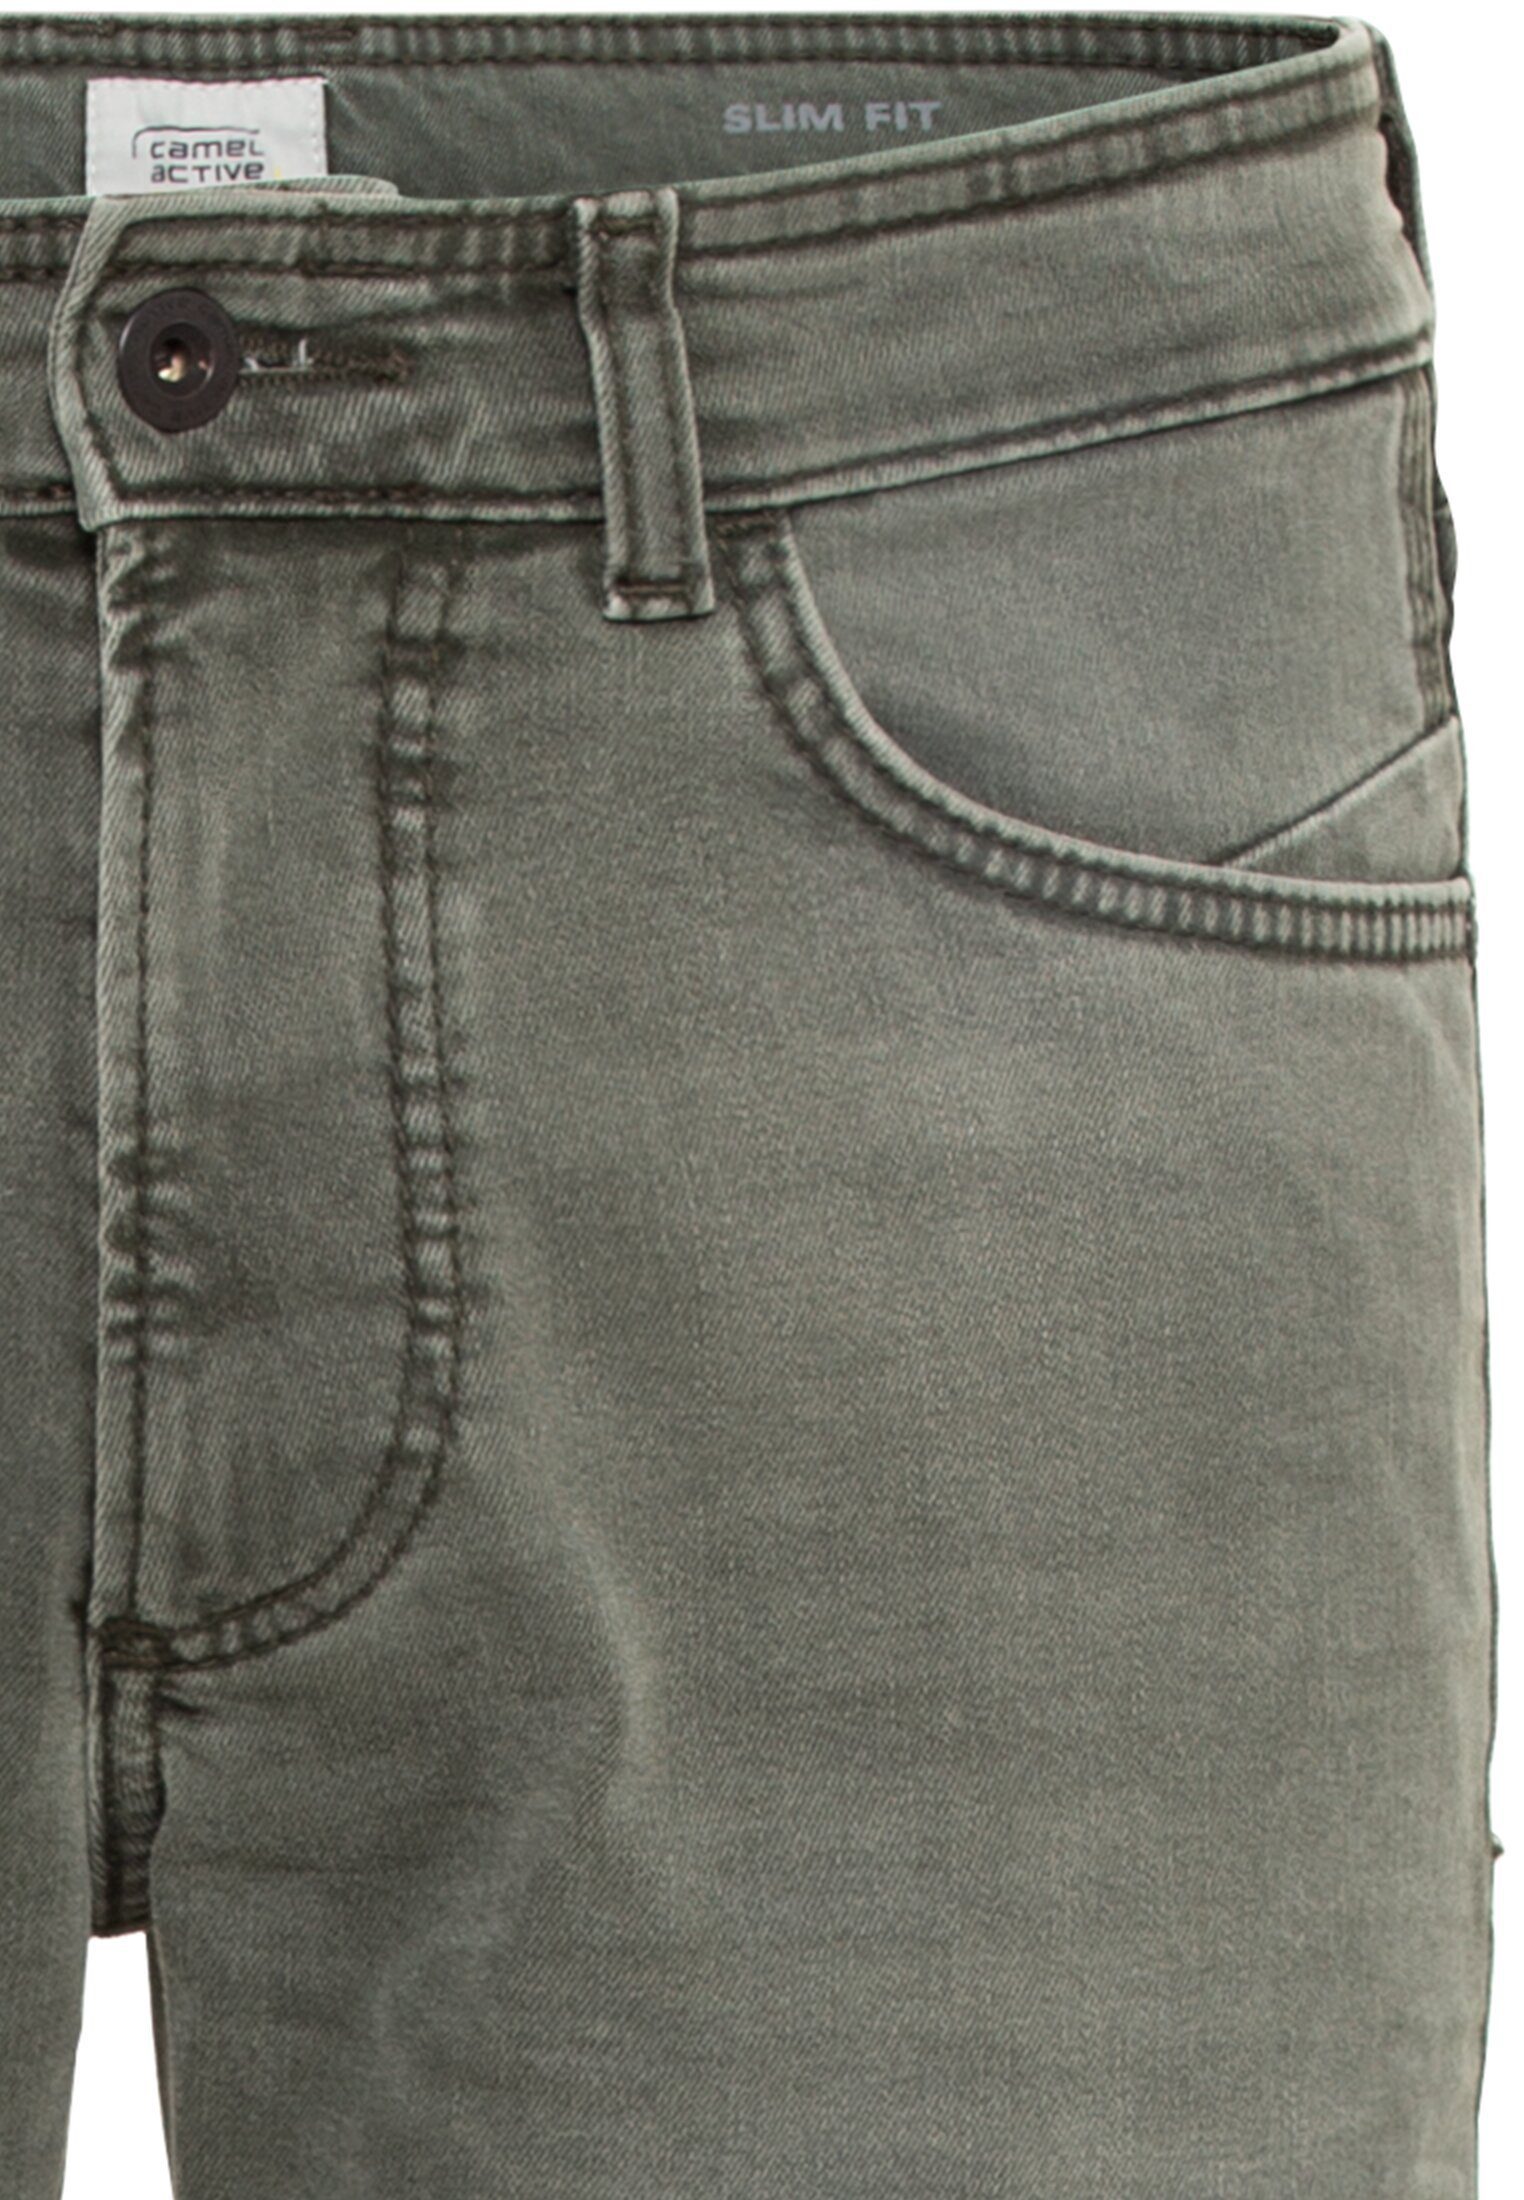 Herren Slim-fit-Jeans camel Camel active Colored Active Denim 5-Pocket-Hose